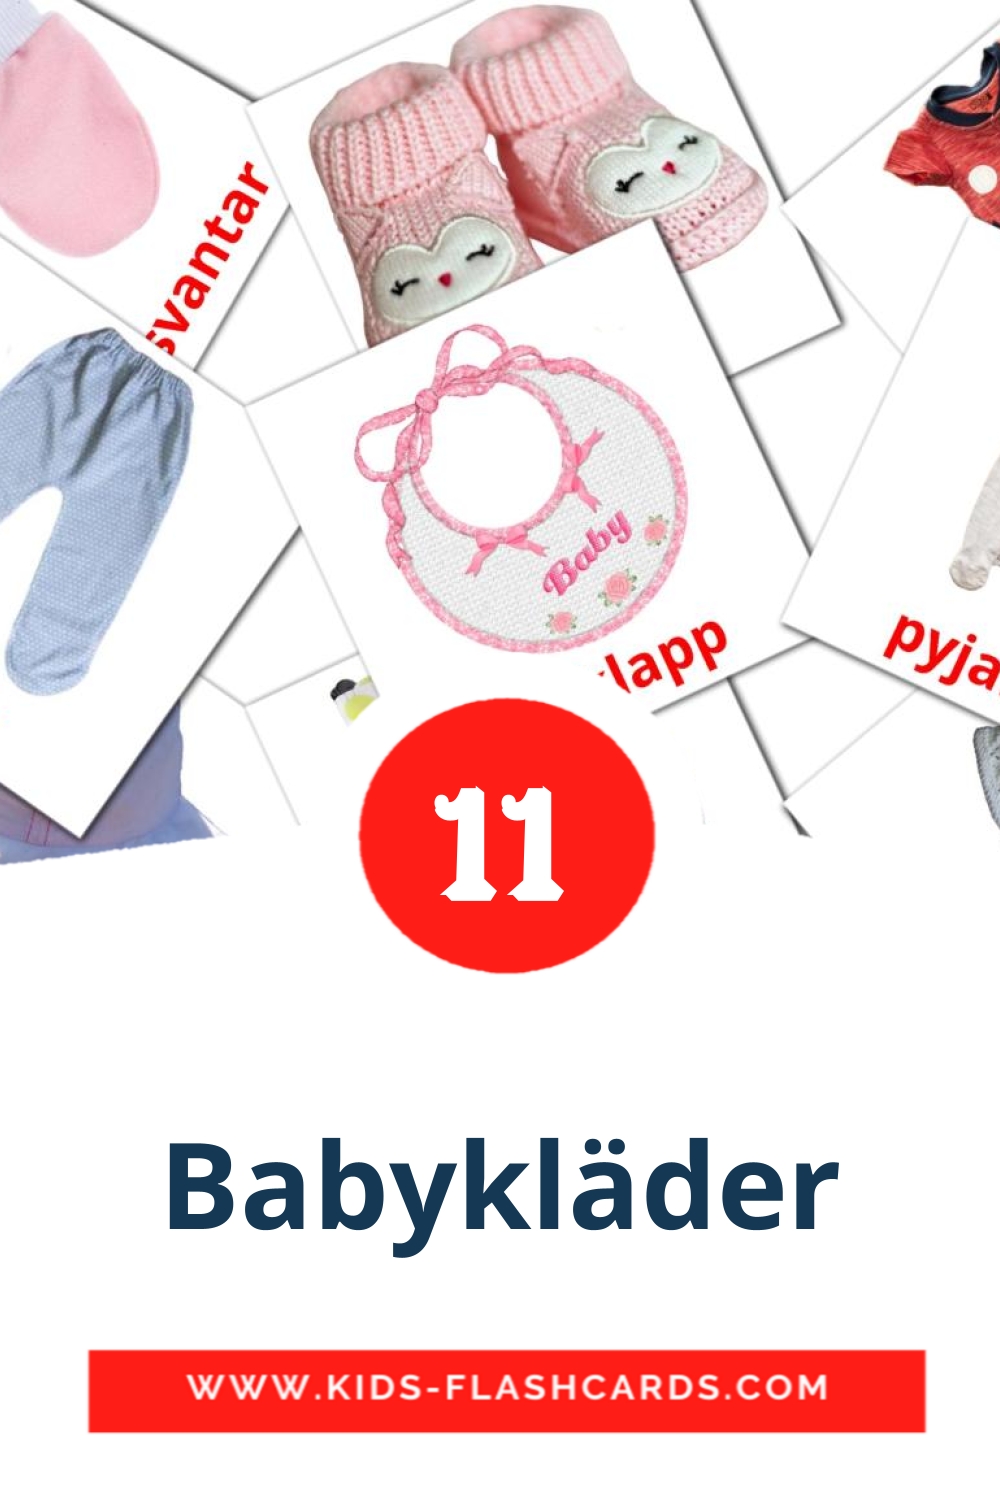 12 babykläder Picture Cards for Kindergarden in swedish